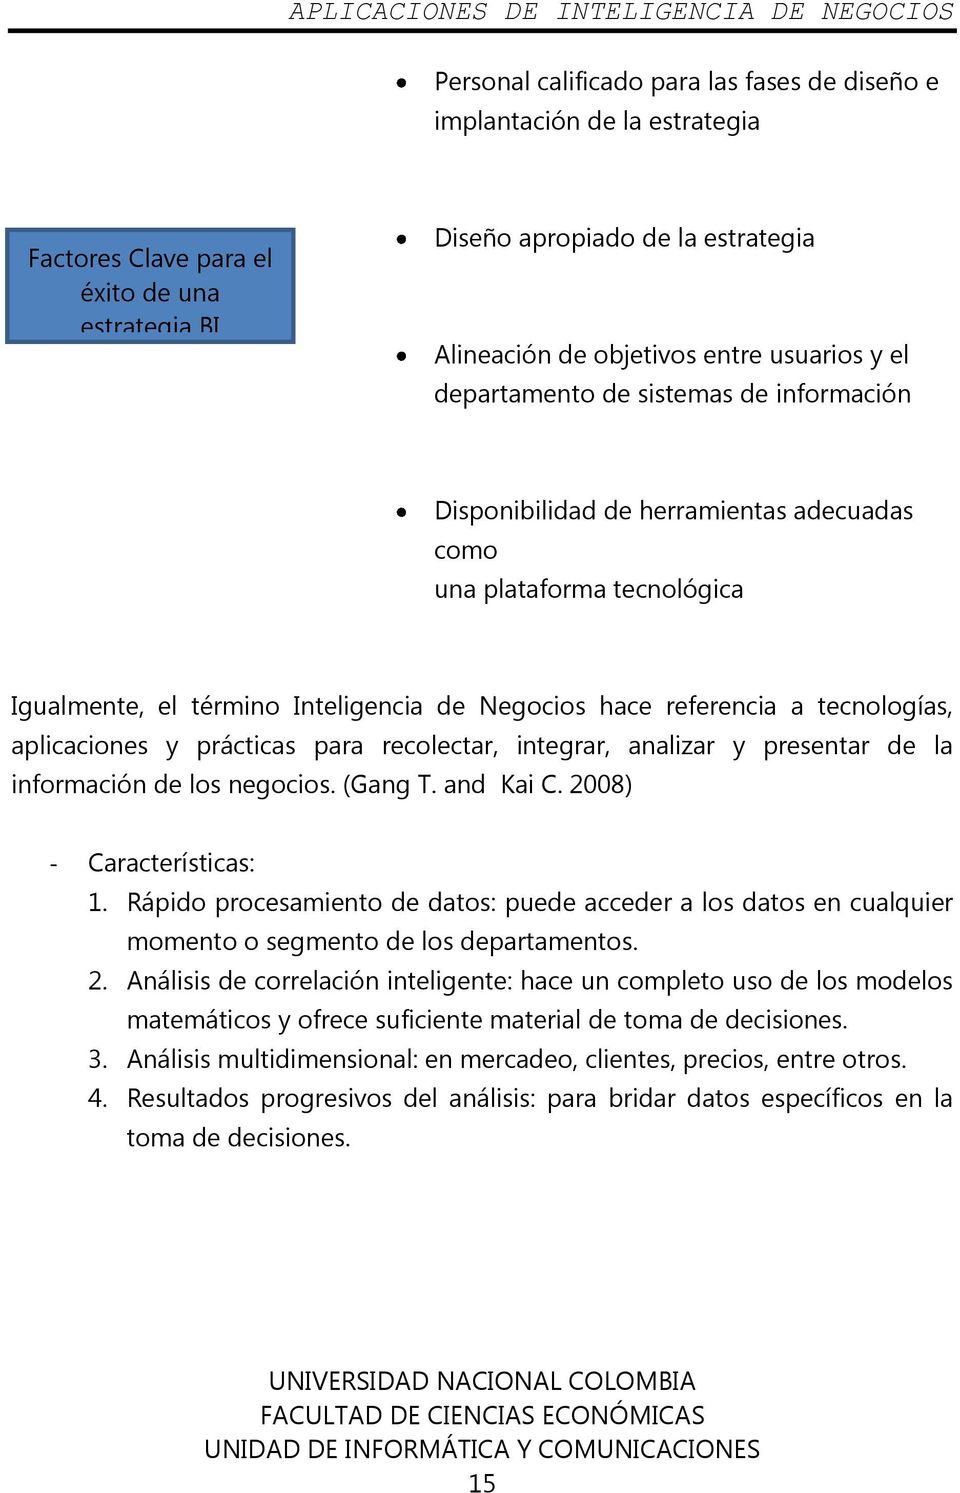 aplicaciones y prácticas para recolectar, integrar, analizar y presentar de la información de los negocios. (Gang T. and Kai C. 2008) - Características: 1.